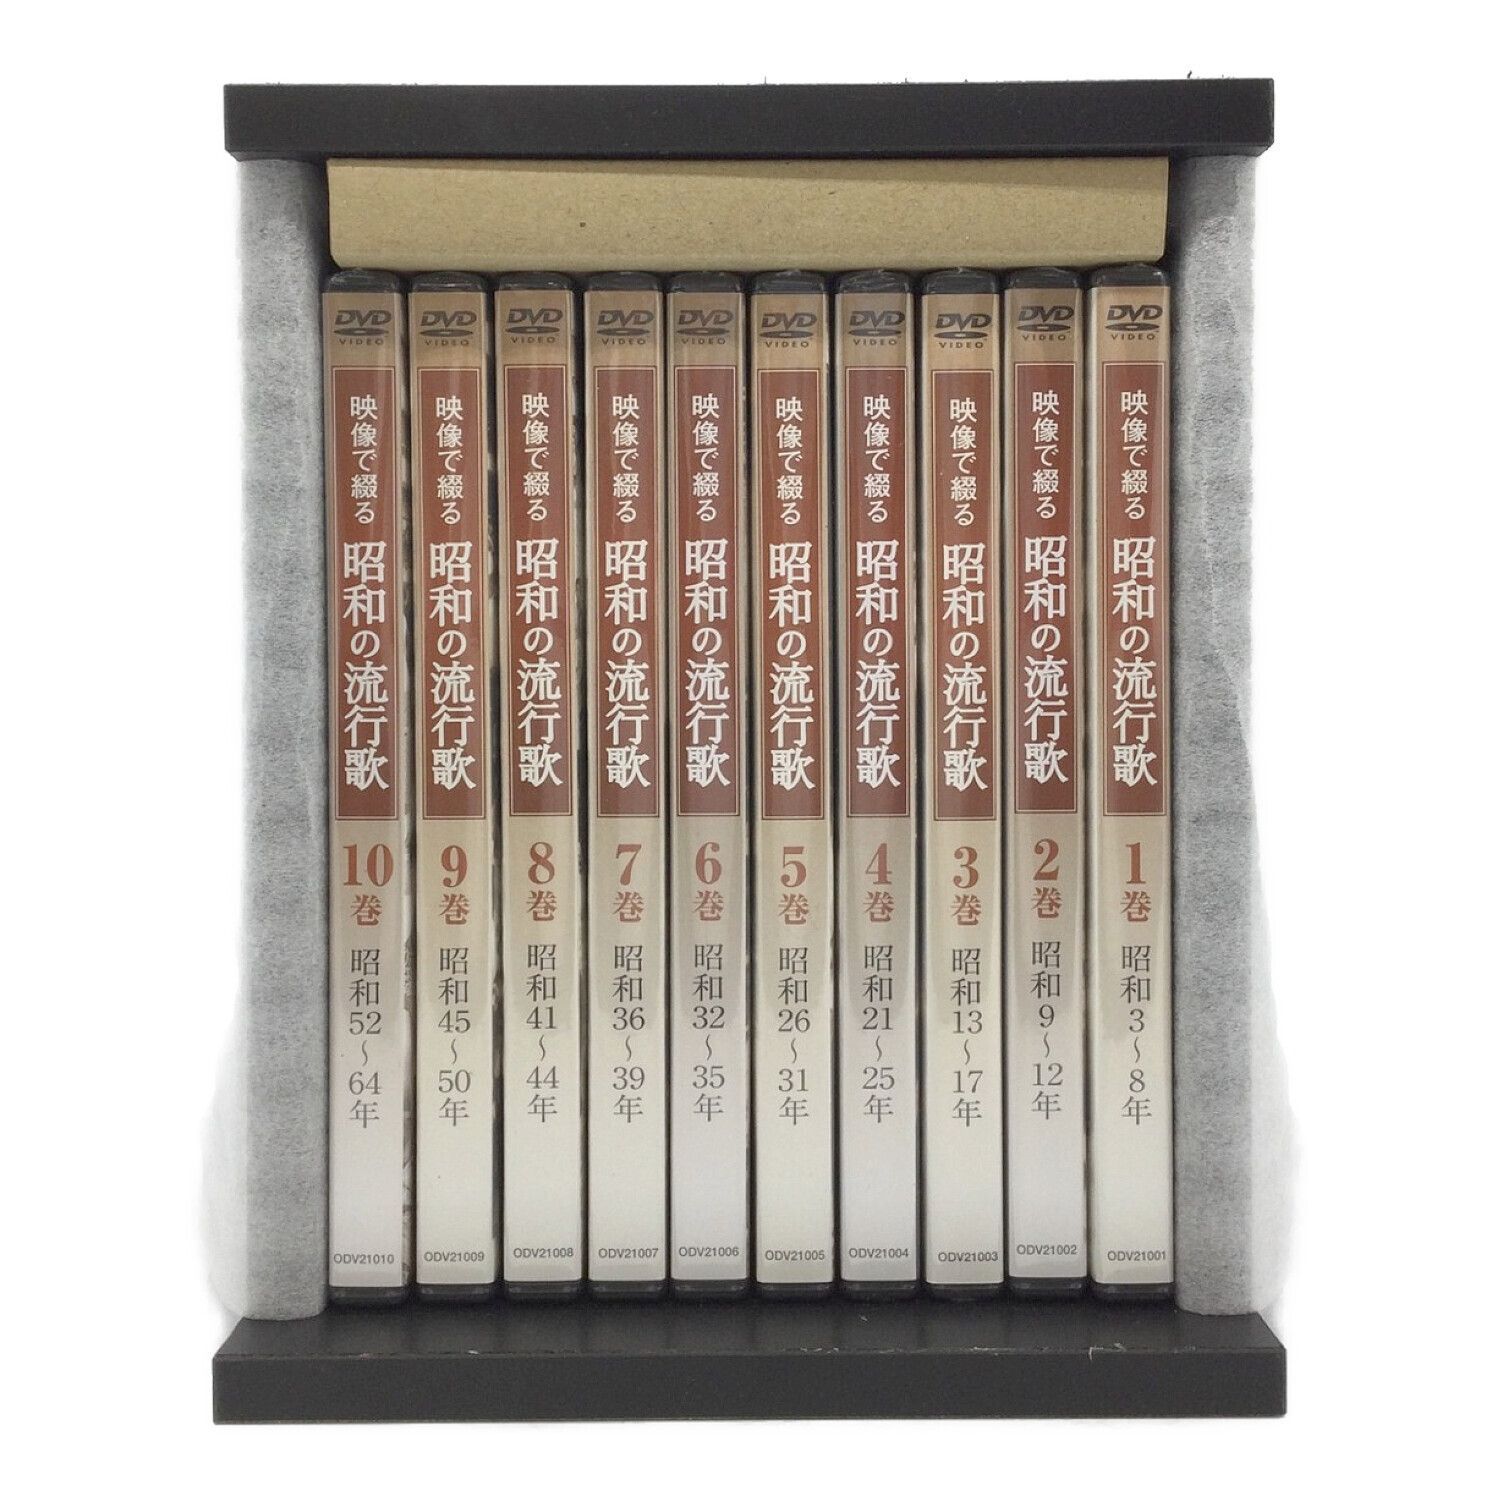 映像で綴る昭和の流行歌 全10巻セット マーケットプレイスDVDセット 